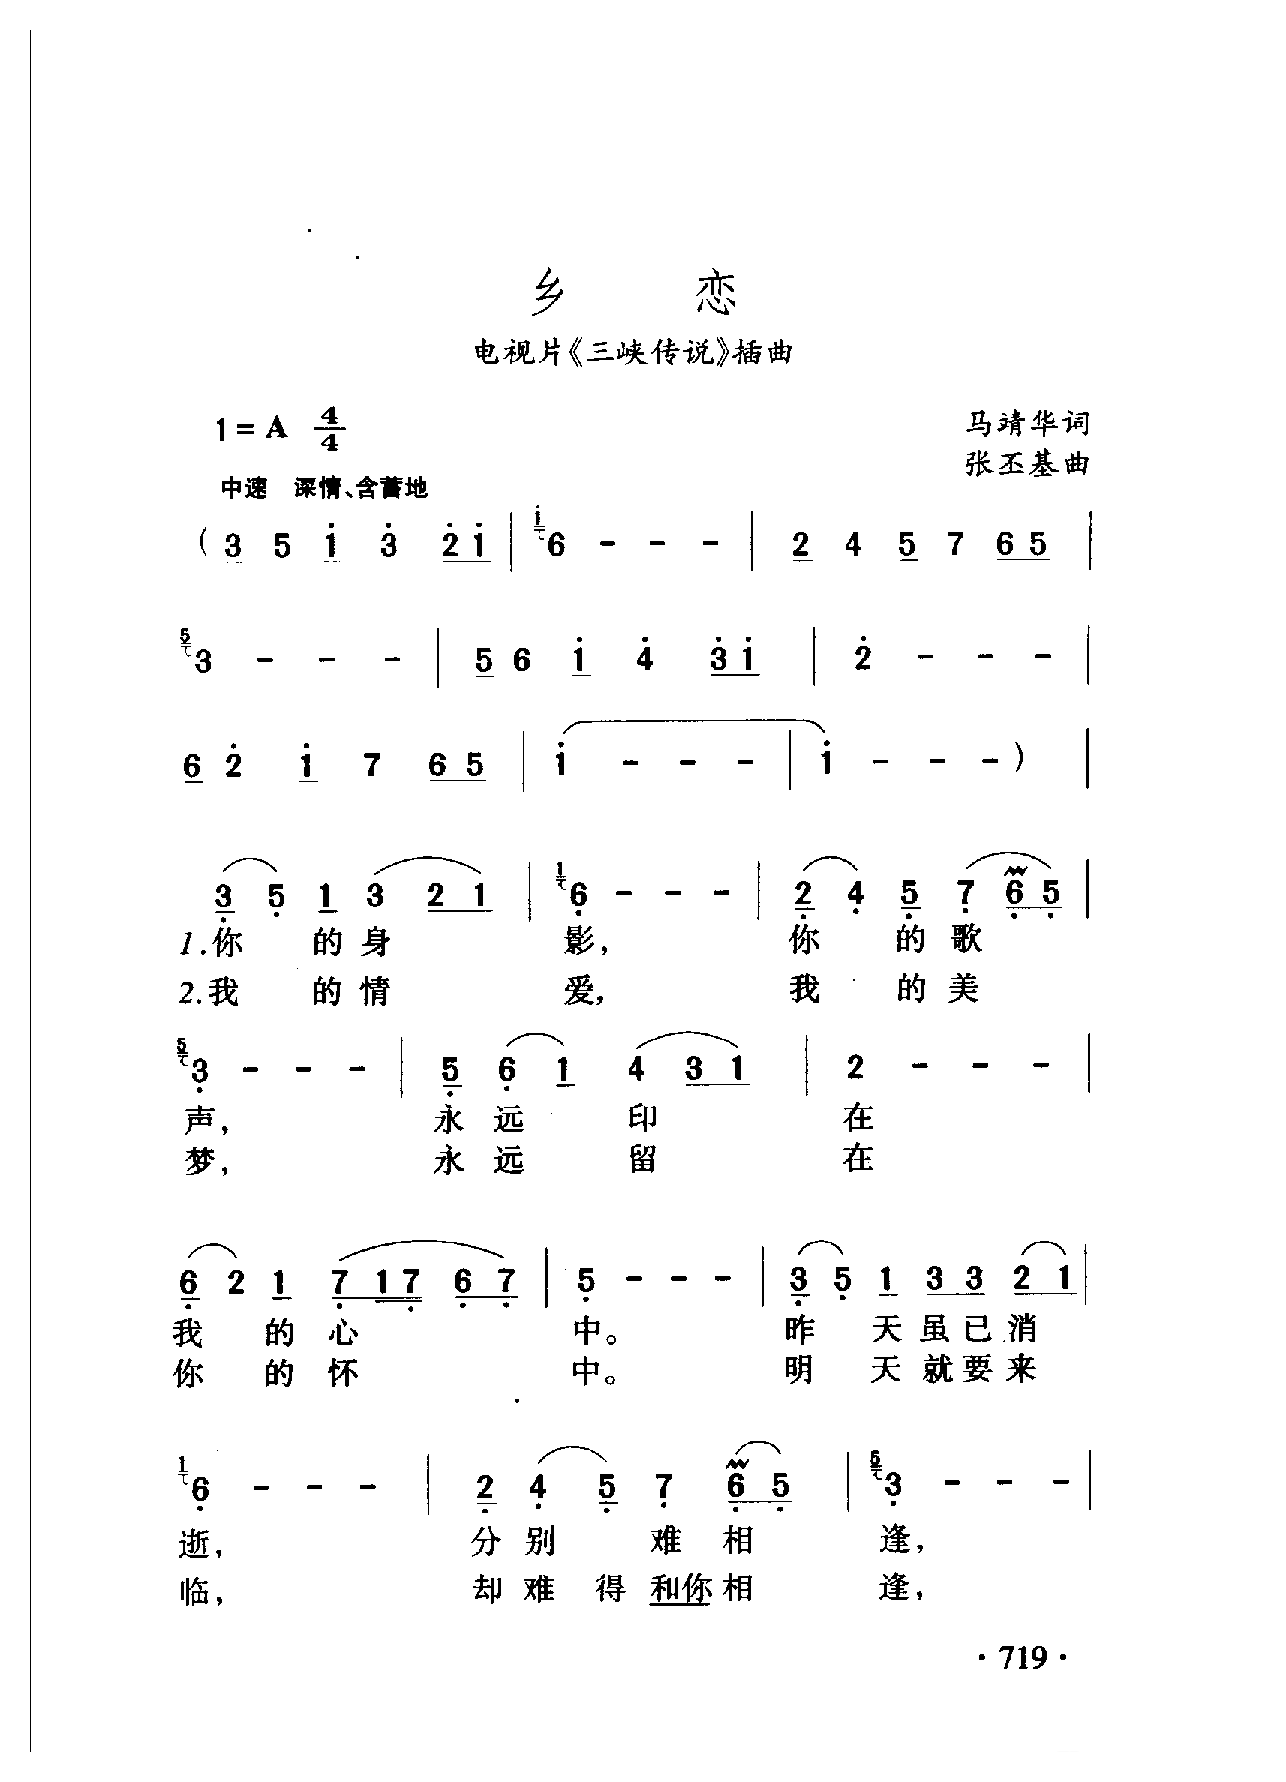 中国名歌[乡恋 电视片（三峡传说）插曲]乐谱